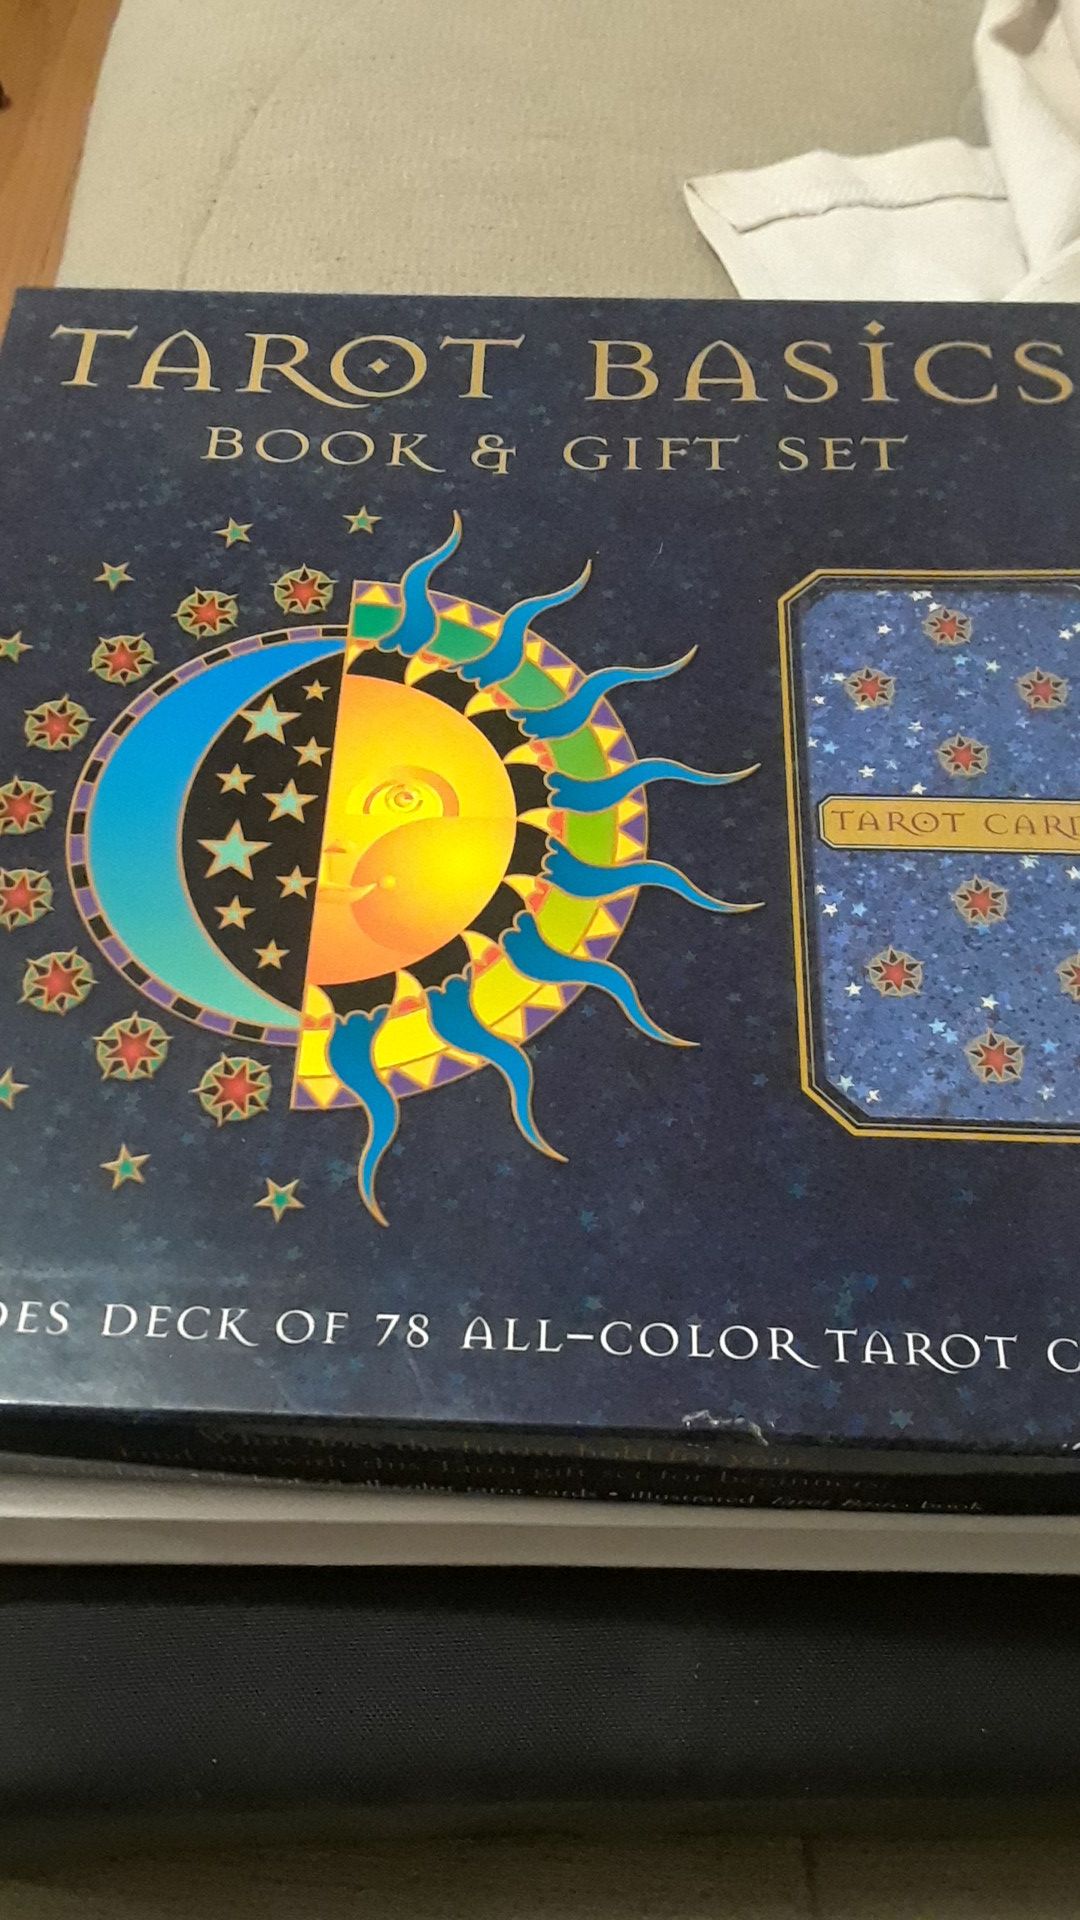 Tarot basics book & gift set.